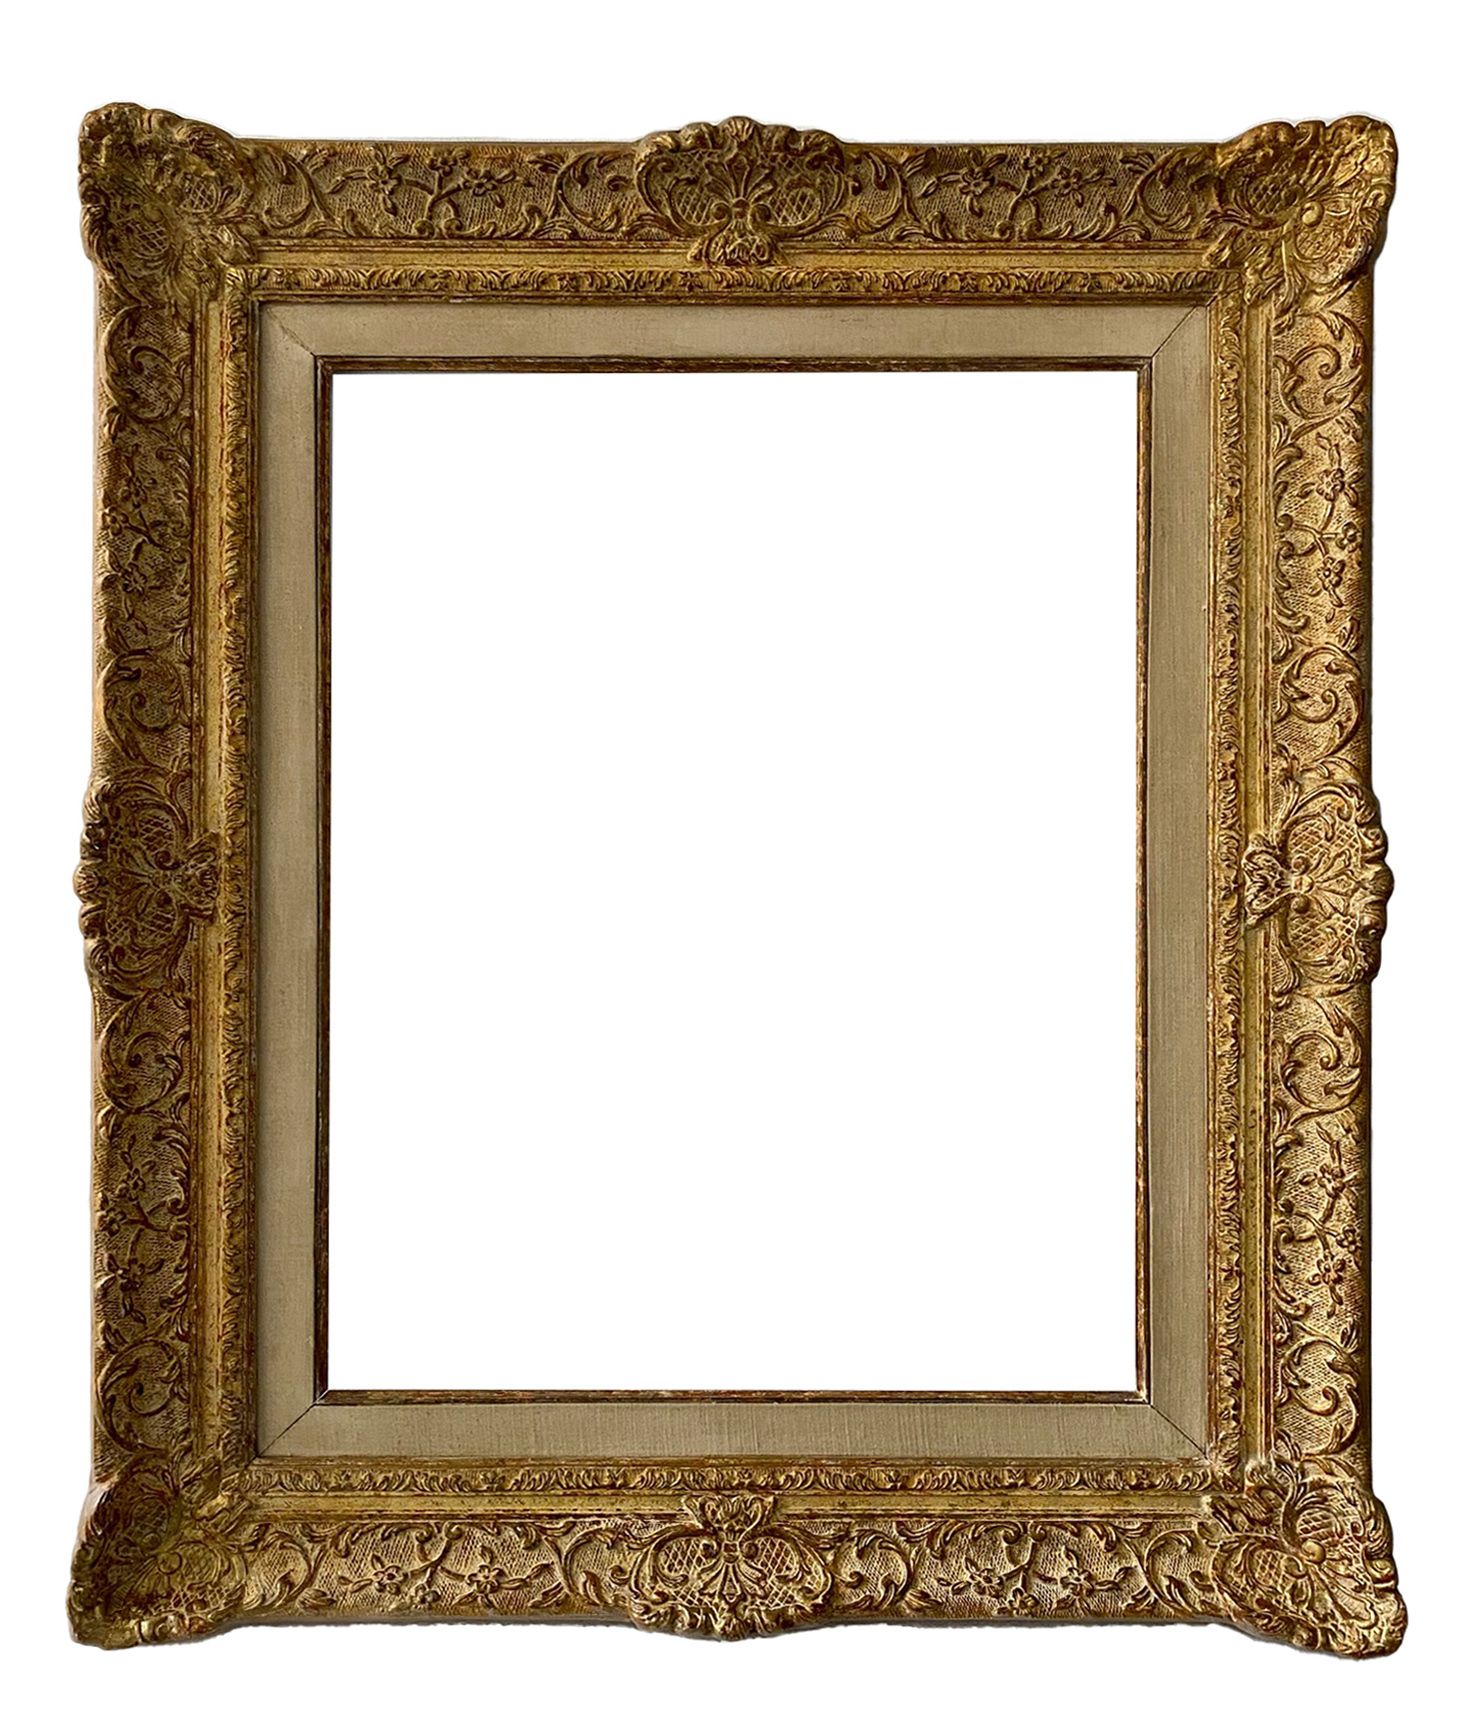 Cadre de style Louis XIV - 64,00 x 49,00 - REF 1133